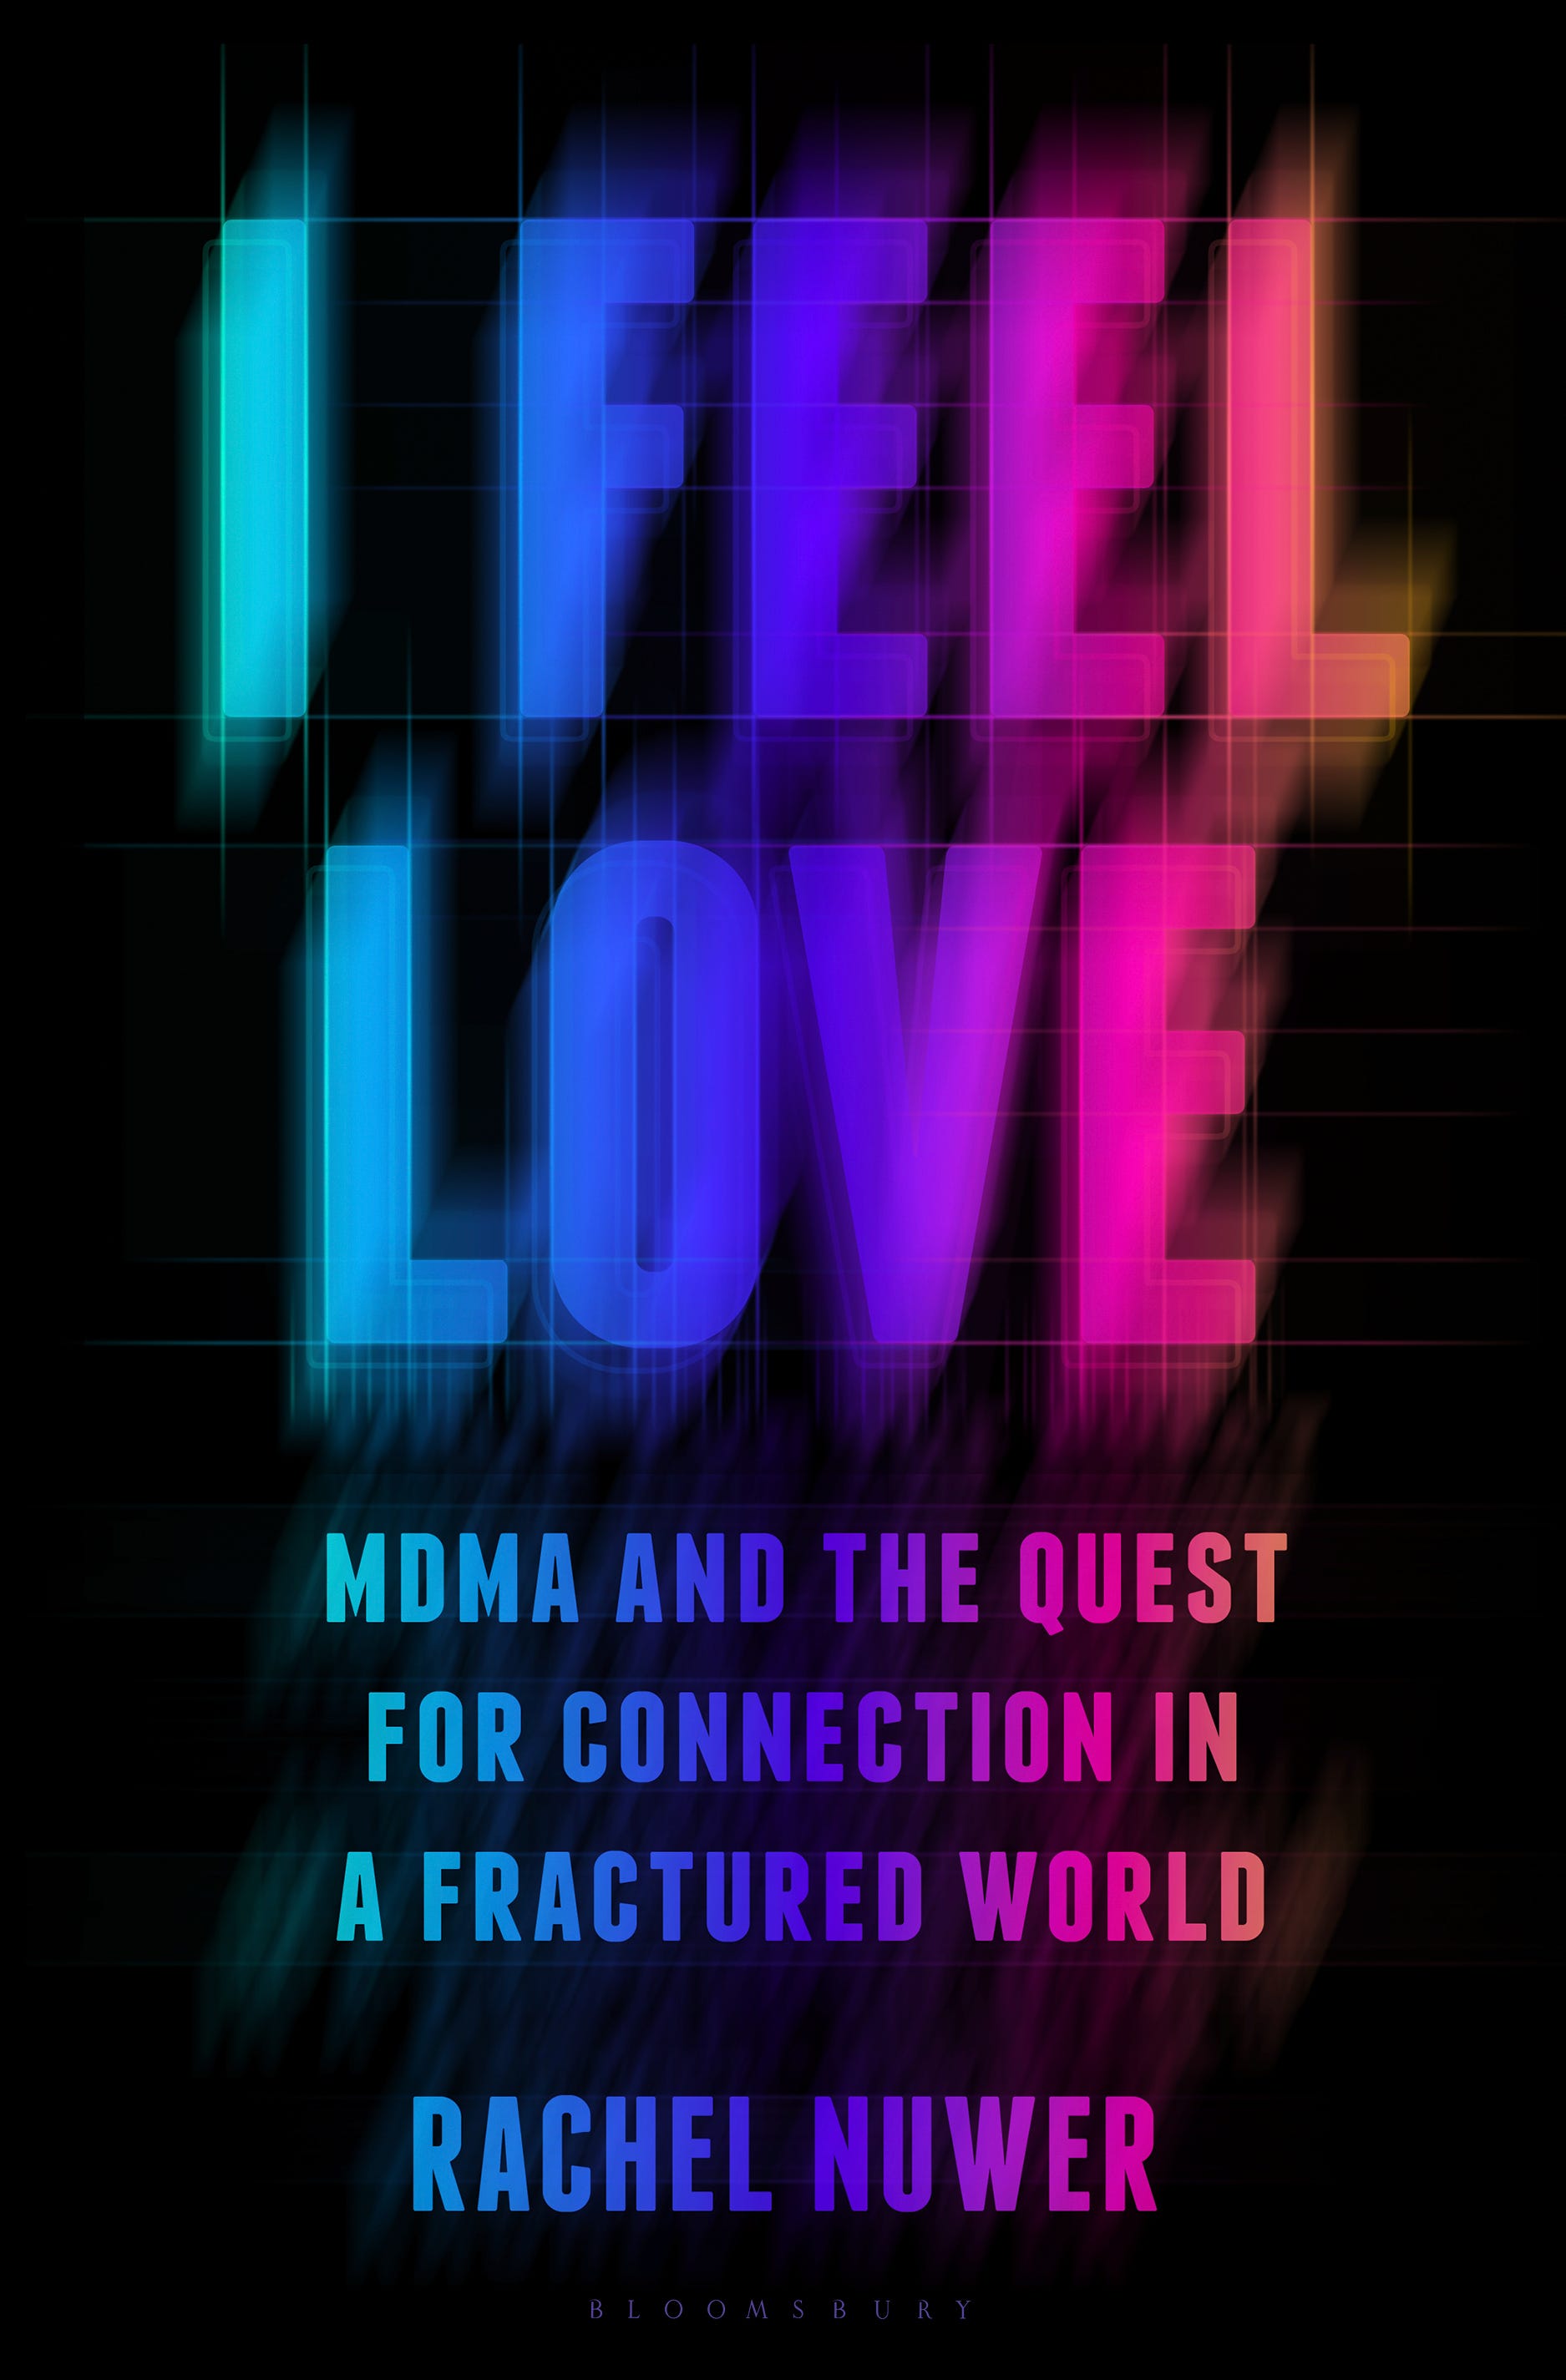 Buchcover für „I Feel Love“ von Rachel Nuwer